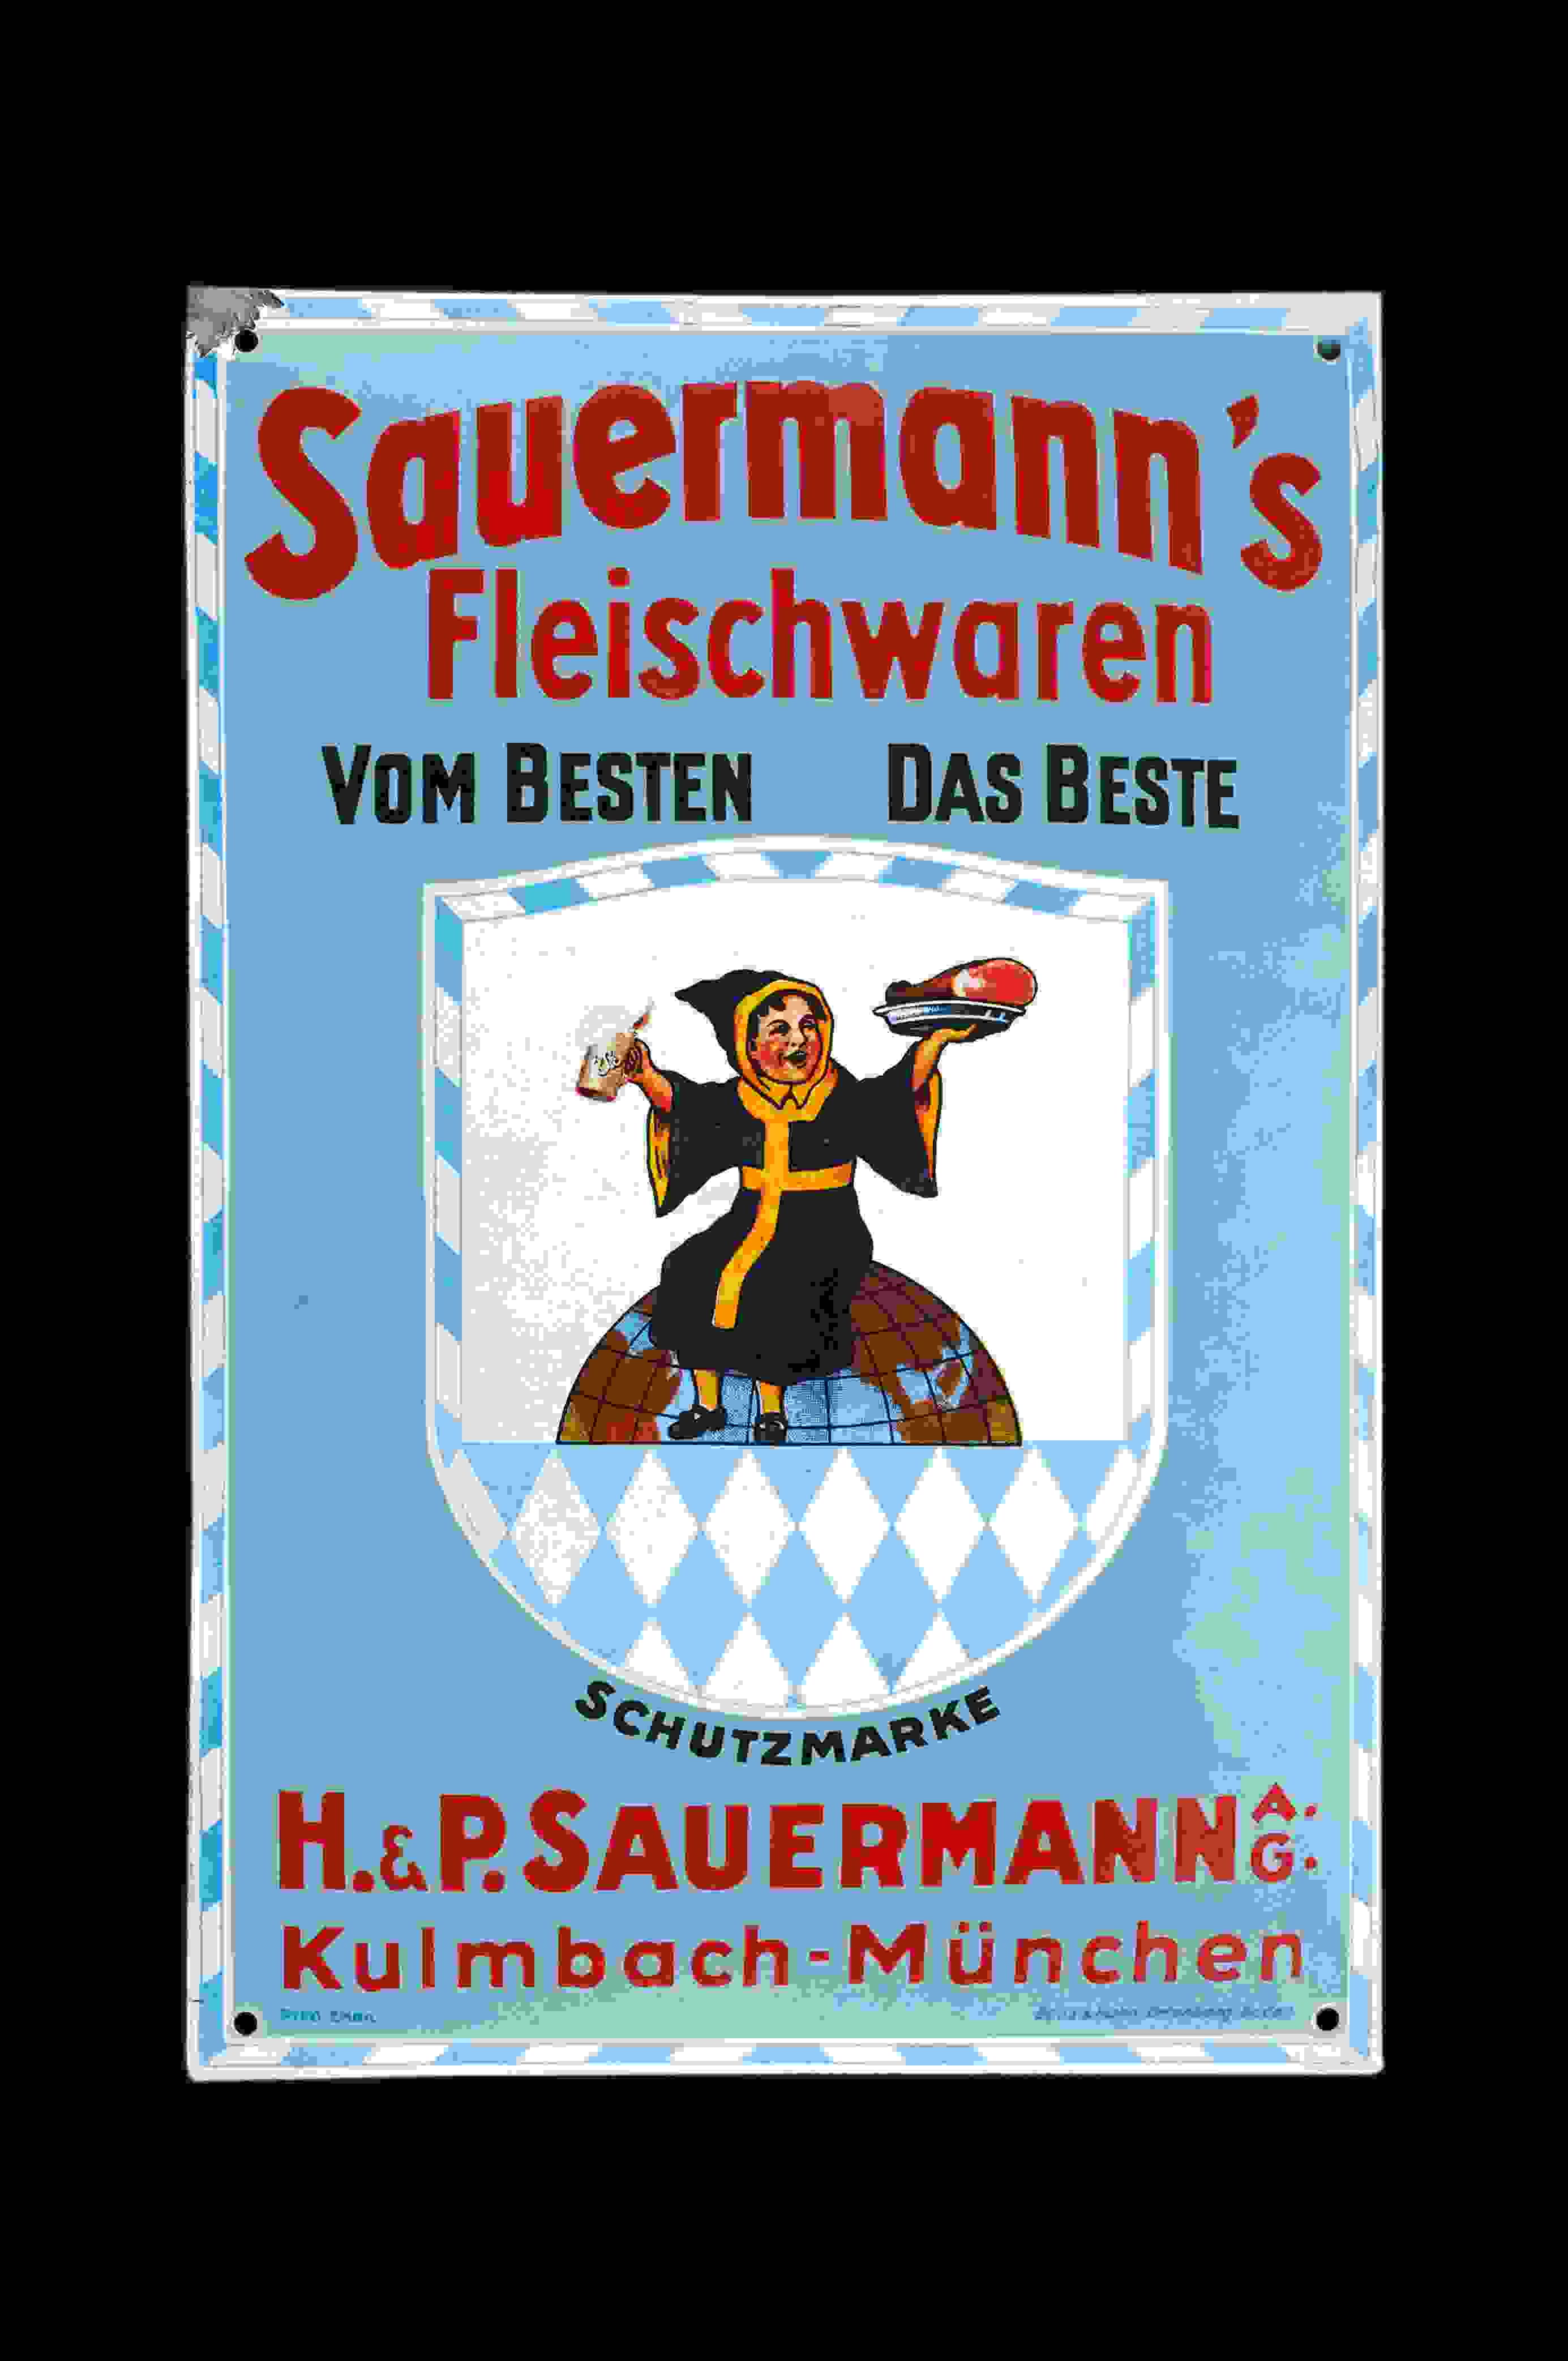 Sauermann's Fleischwaren 